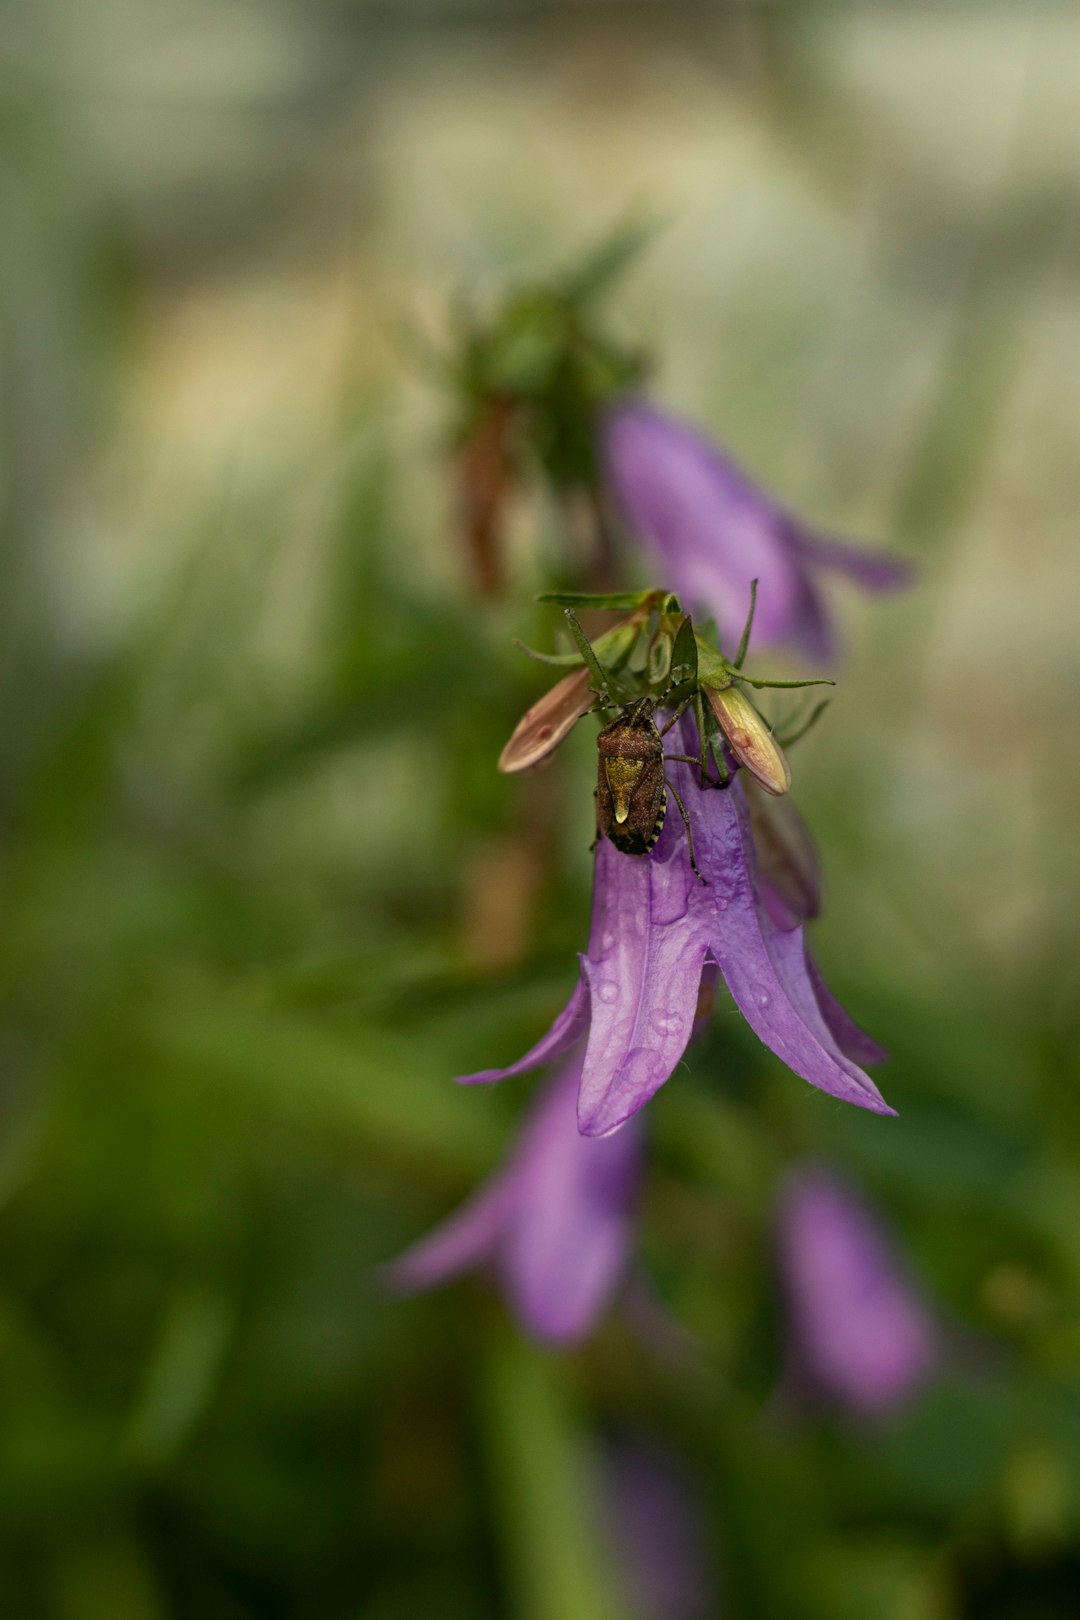 brown bee on purple flower in tilt shift lens